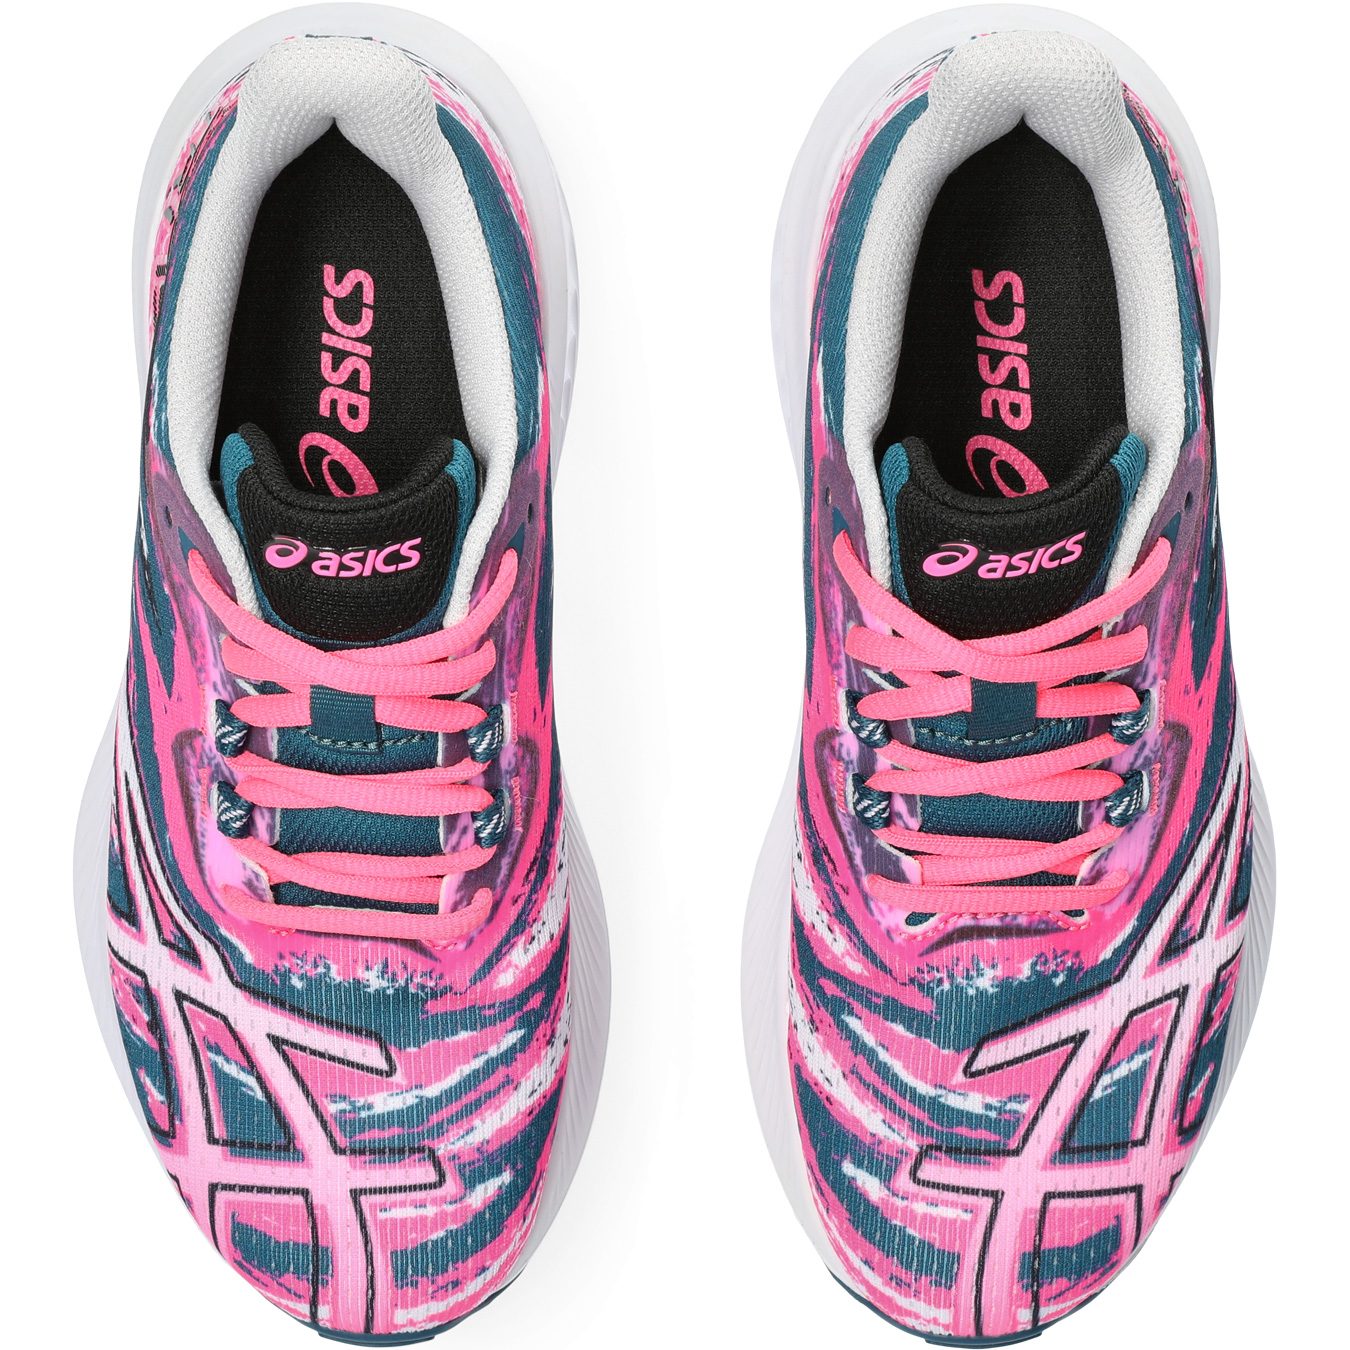 ASICS - Gel-Noosa TRI 15 Shoes Kids hot pink Running GS Bittl Sport Shop at